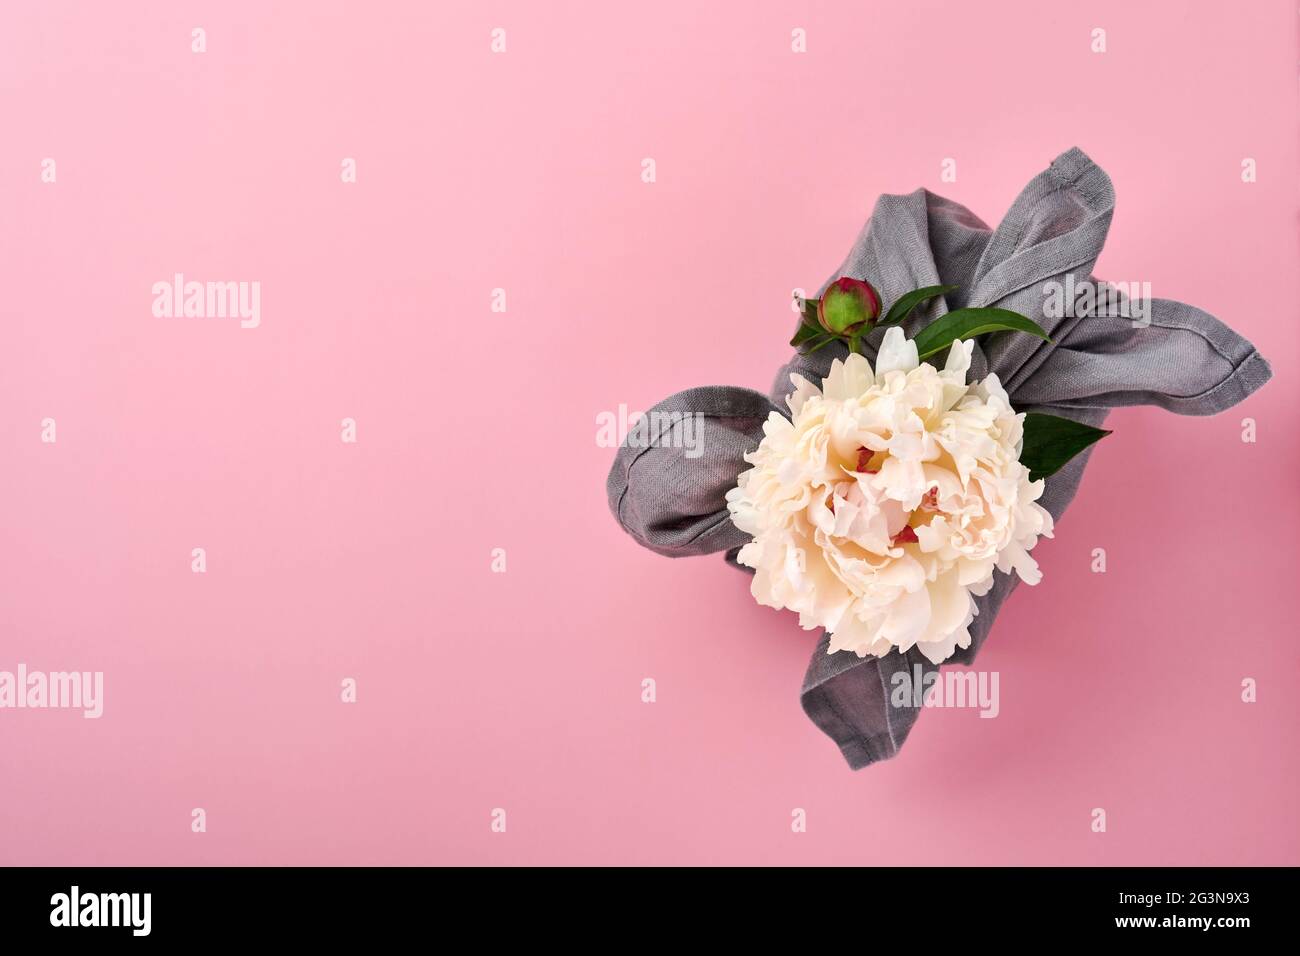 Regalo ecológico de primavera envuelto en tela gris con una decoración de flores peonías blancas sobre rosa. Regalo sostenible. Estilo tradicional japonés furoshiki. V Foto de stock